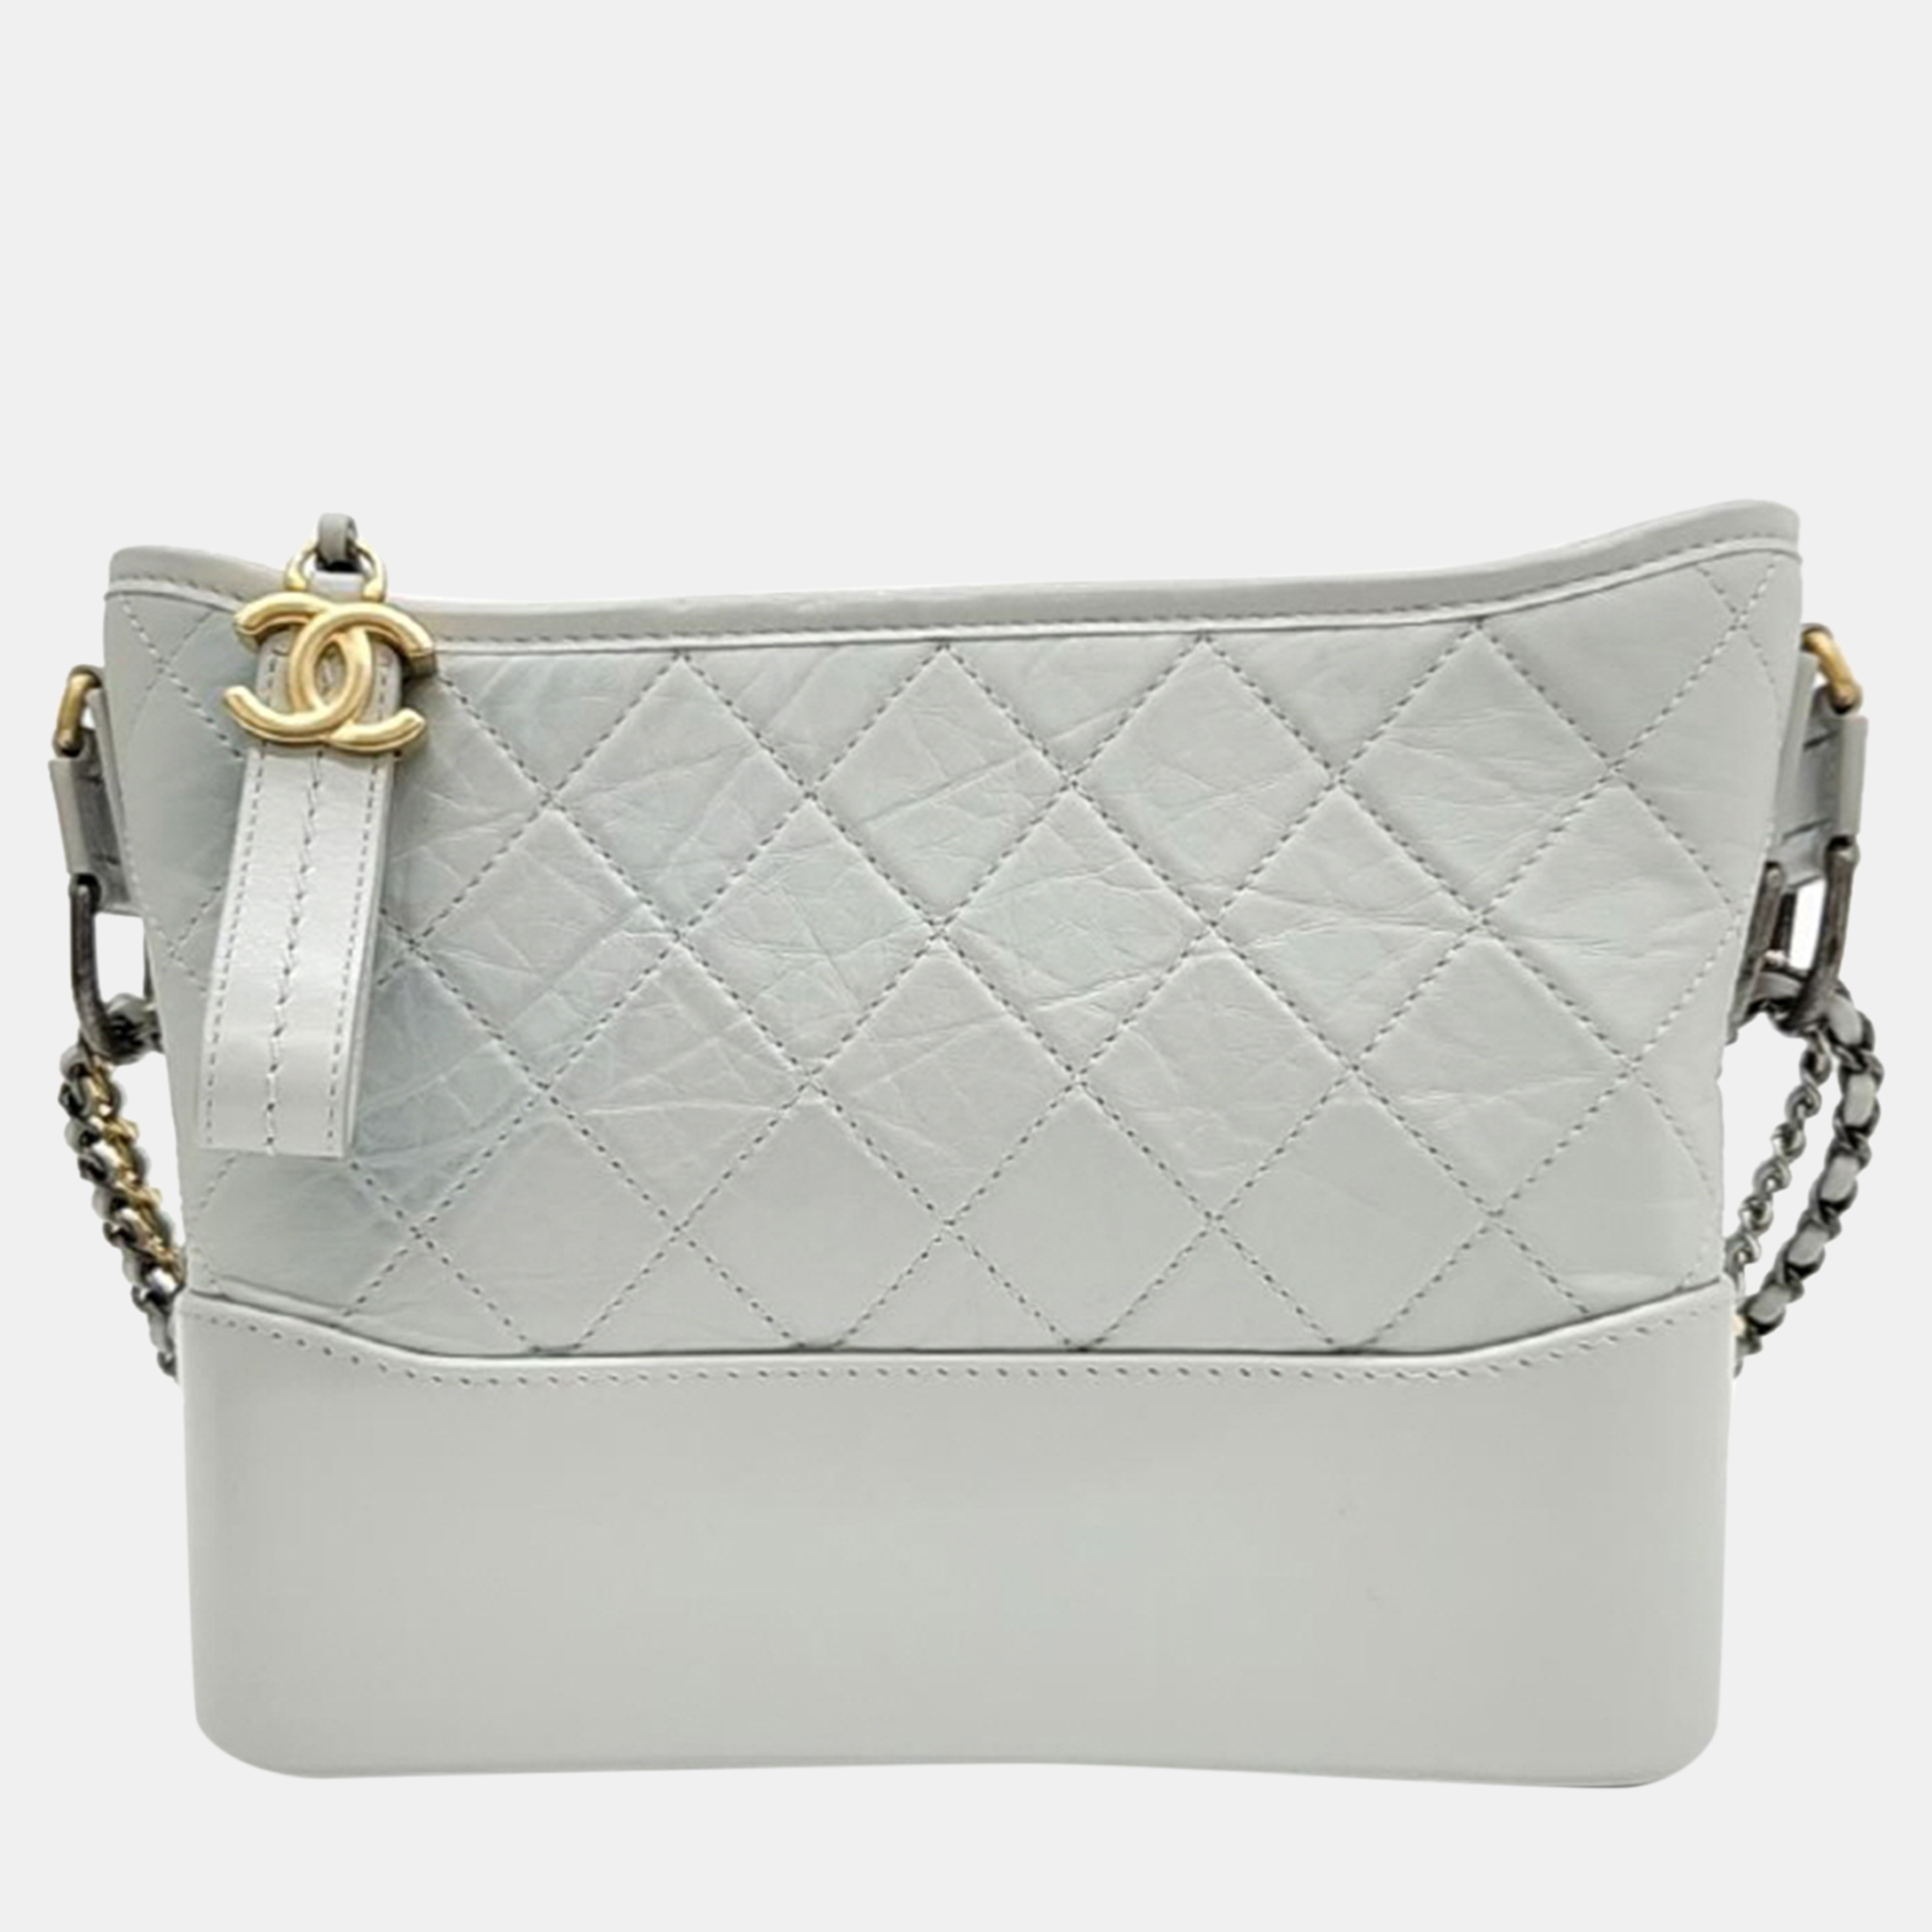 Chanel grey leather gabrielle medium hobo bag